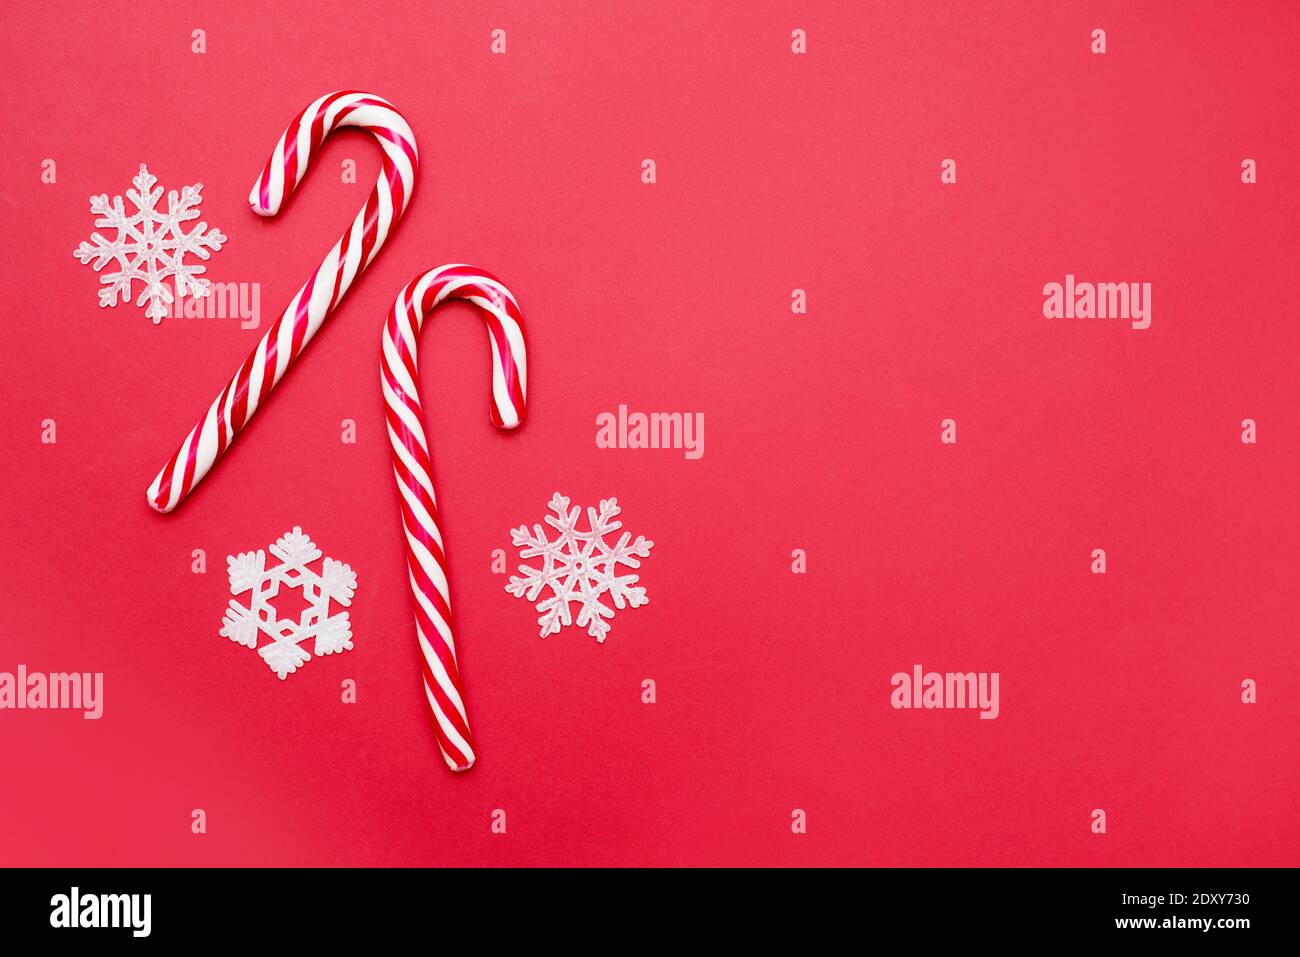 Décorations de Noël flocons de neige et canne à sucre sur fond rouge Banque D'Images